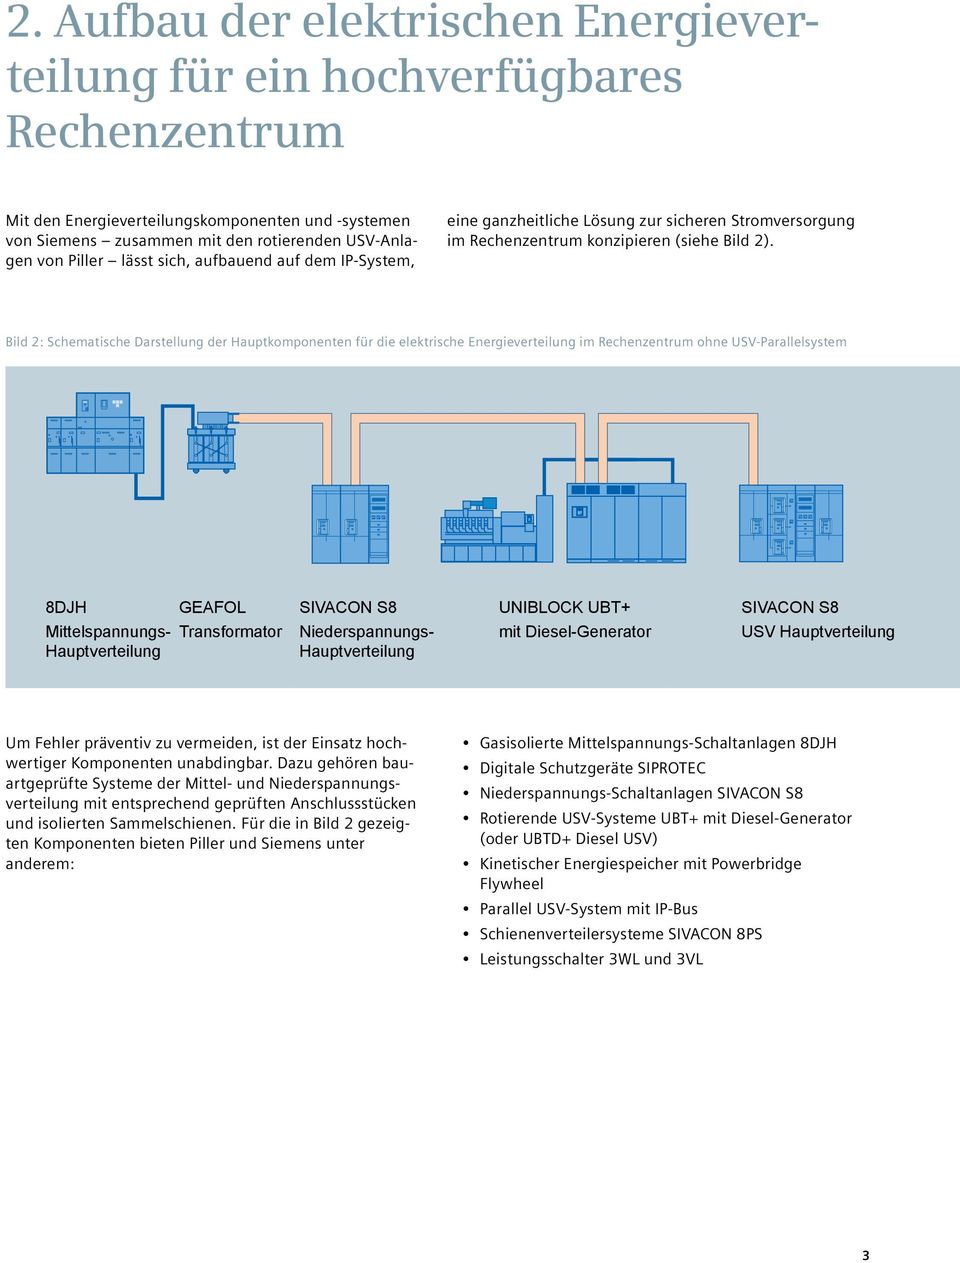 Bild 2: Schematische Darstellung der Hauptkomponenten für die elektrische Energieverteilung im Rechenzentrum ohne USV-Parallelsystem 8DJH Mittelspannungs- Hauptverteilung GEAFOL Transformator SIVACON